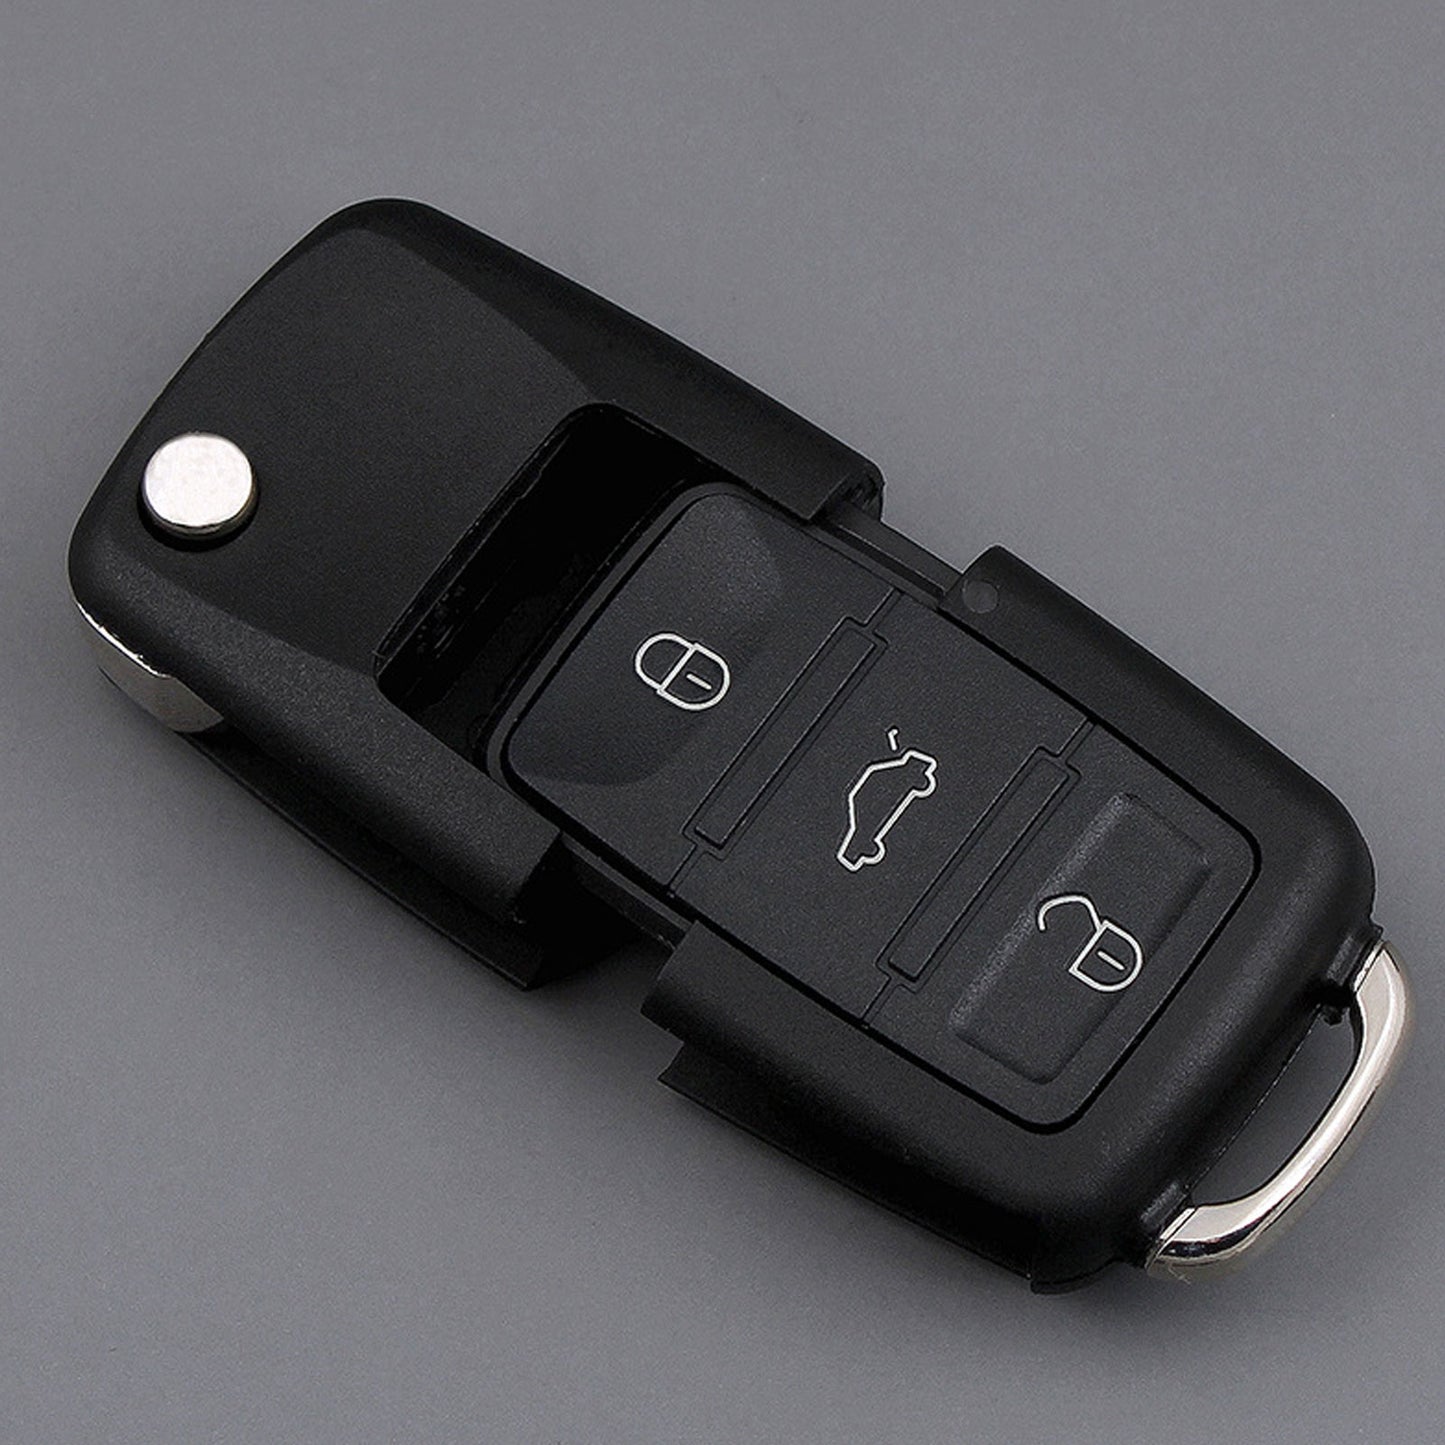 Stash Car Key